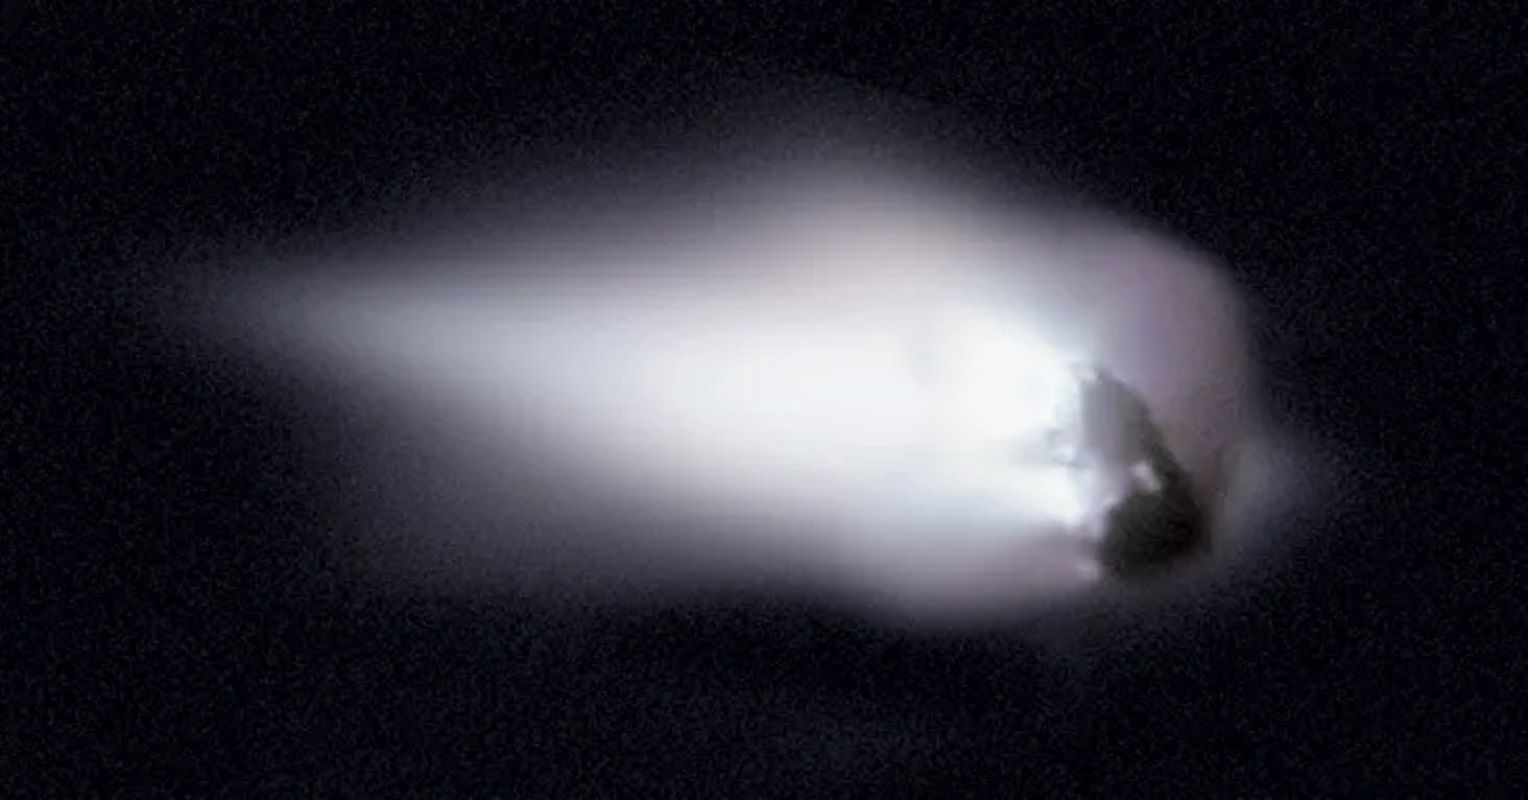 El cometa Halley captado por la Nasa en 1986. Foto: NASA.